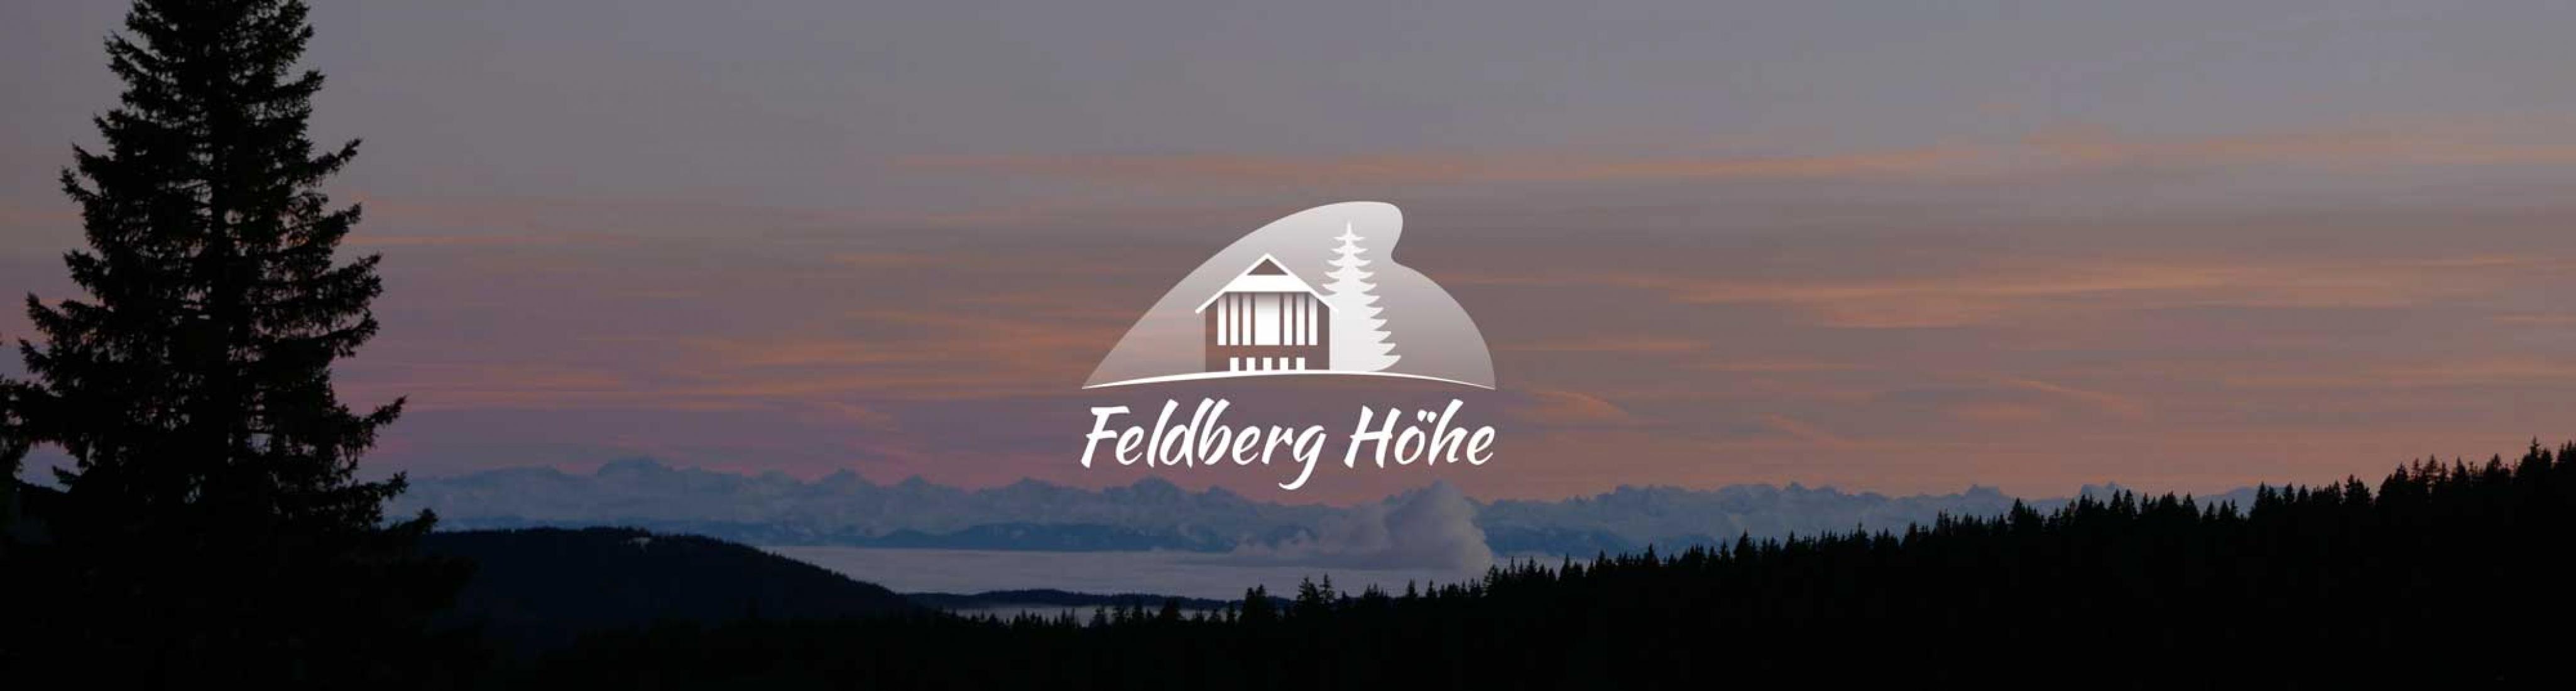 Feldberg Höhe Blick am Sonnenuntergang